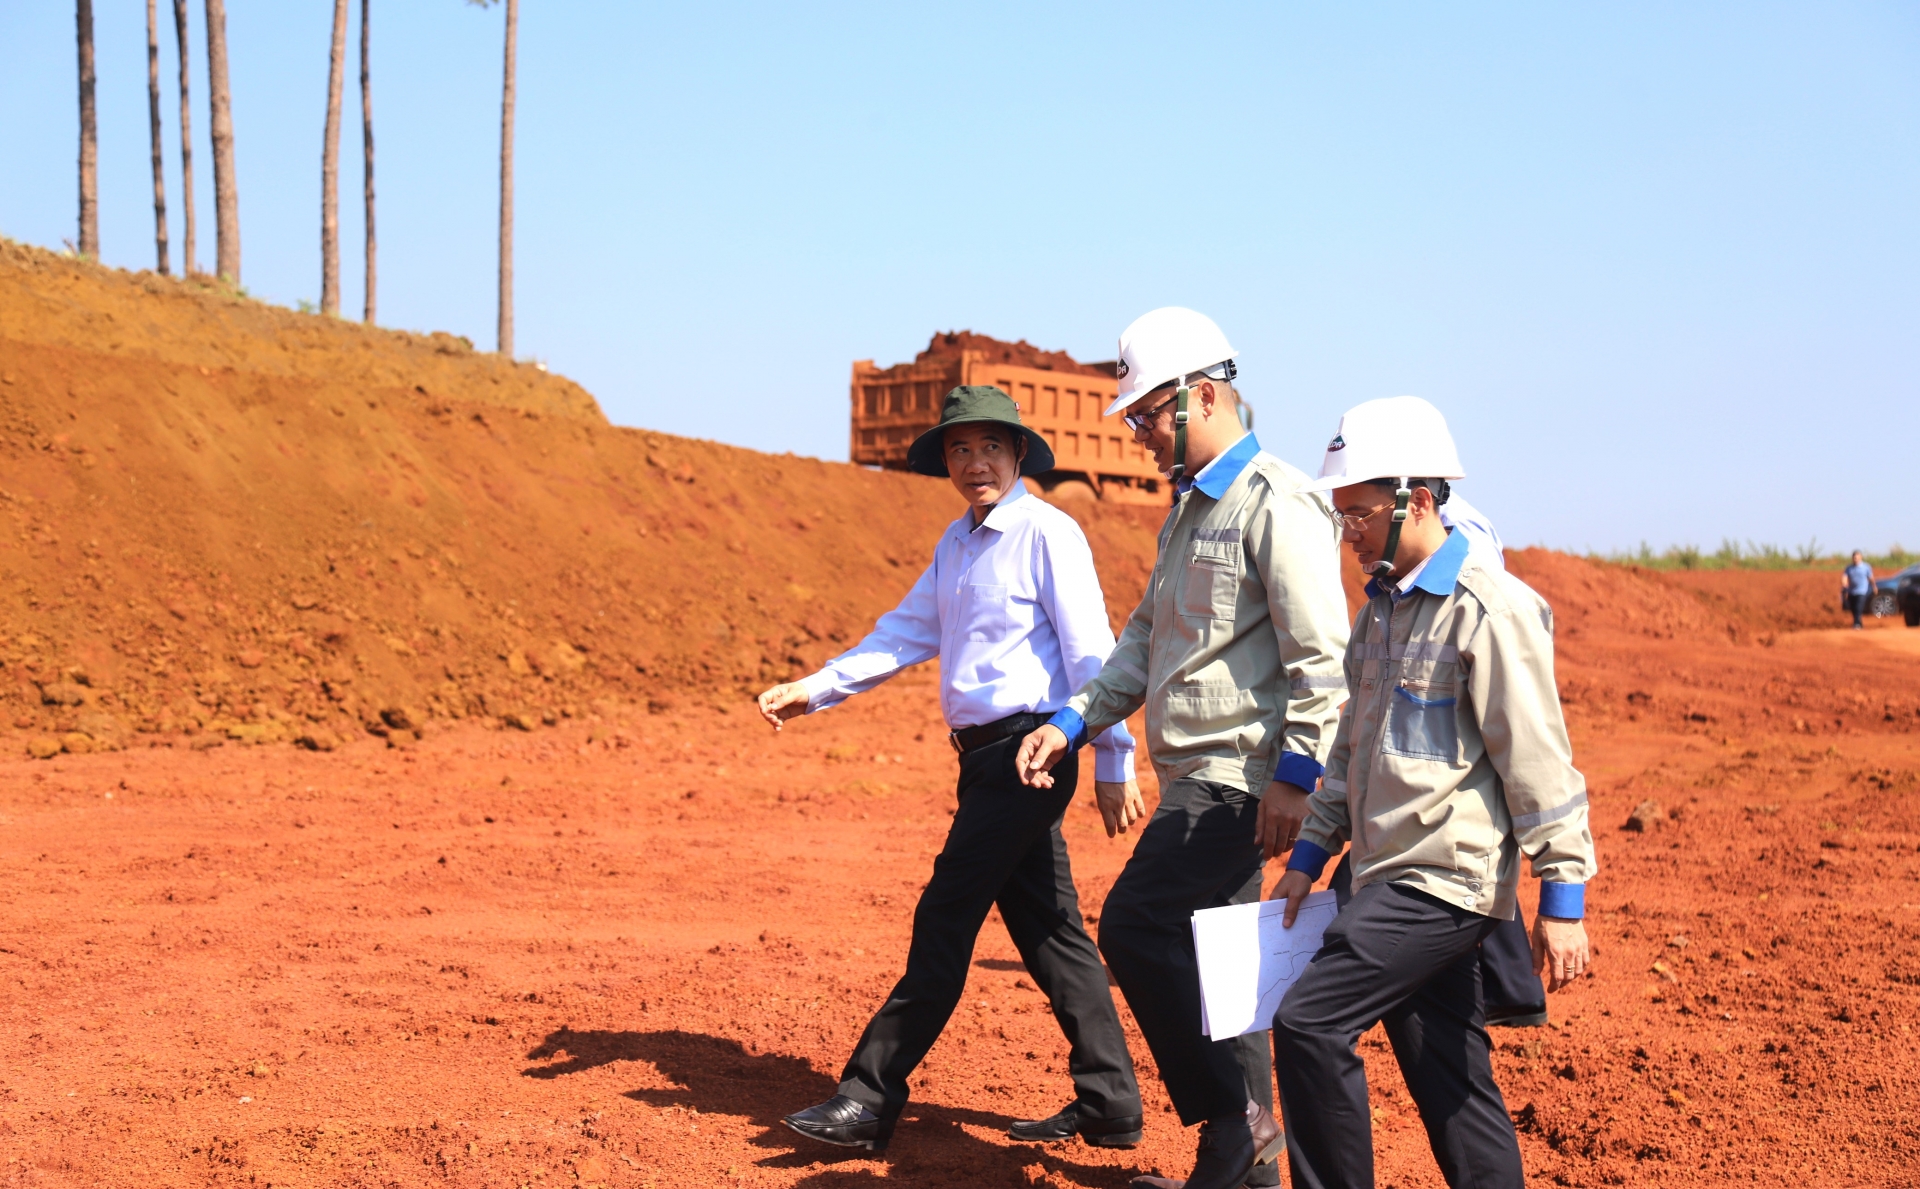 Quyền Bí thư Tỉnh ủy Lâm Đồng Nguyễn Thái Học khảo sát thực tế tại khu vực khai thác quặng thuộc Dự án Bauxite - Nhôm Lâm Đồng